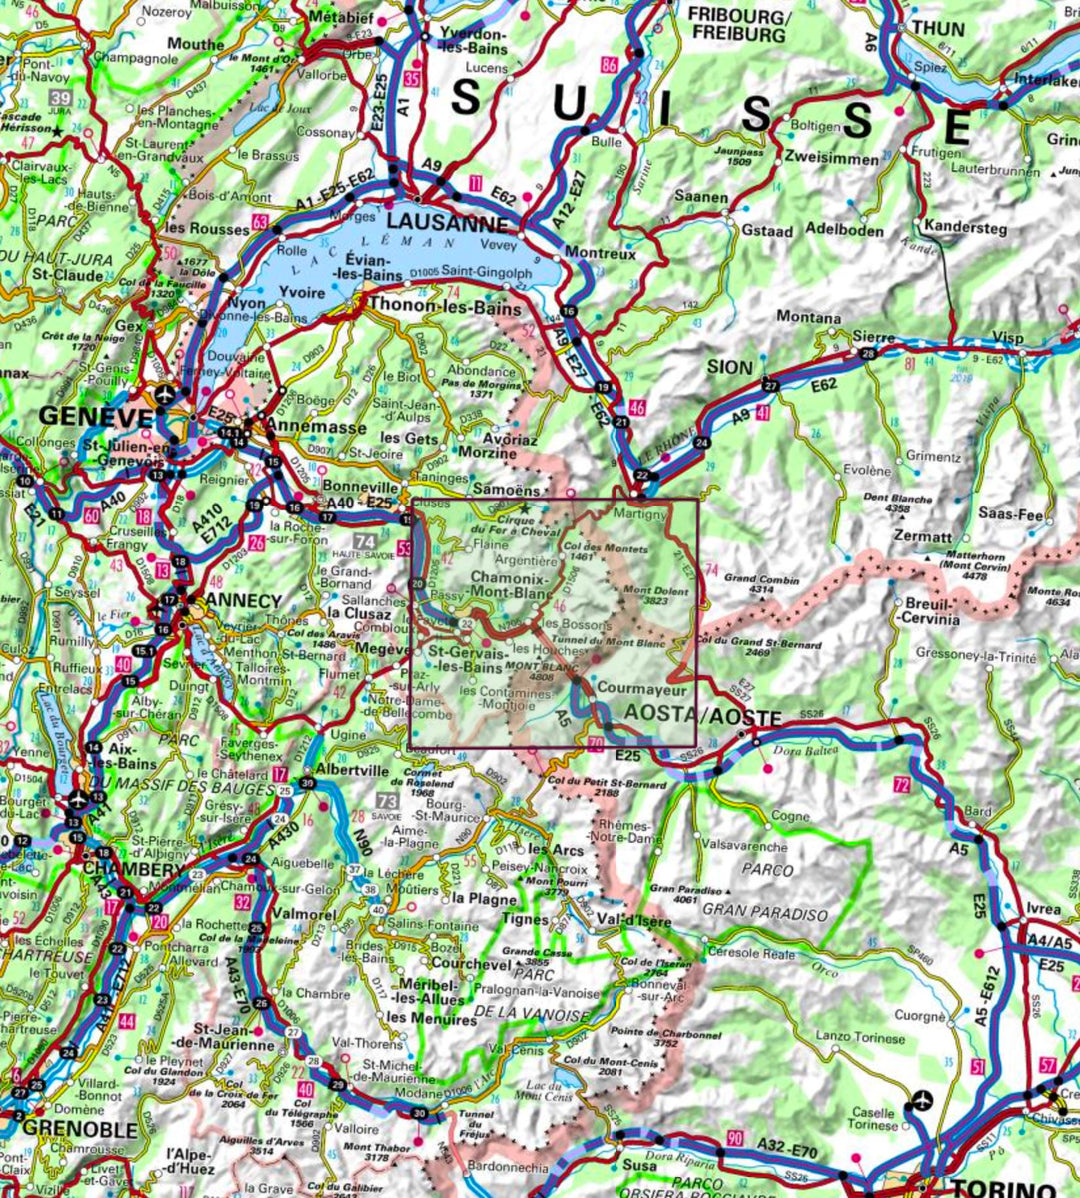 Carte de randonnée - Tour du Mont Blanc | IGN carte pliée IGN 